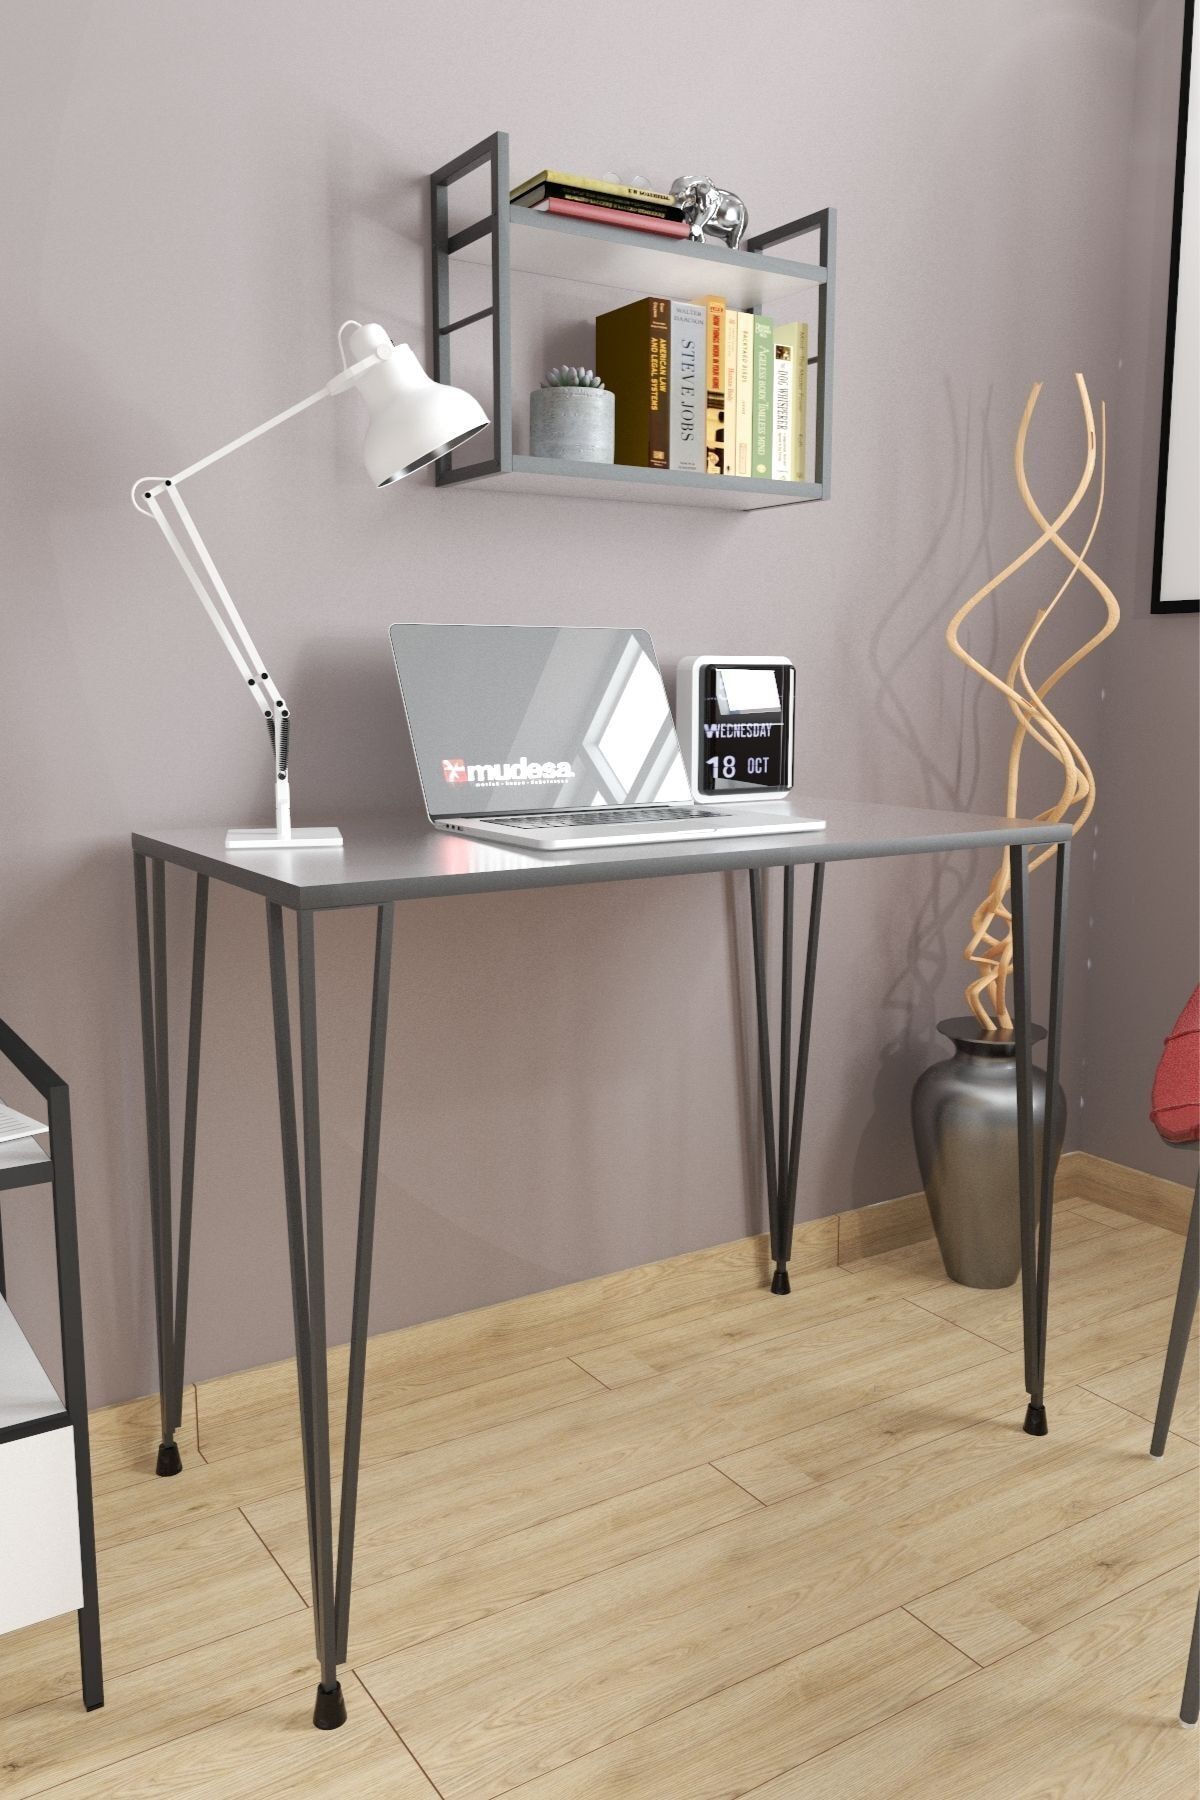 Mudesa 90x60 Cm Çalışma Masası Metal Ayaklı Modern Ofis Oda Çalışma Masası Mini Çocuk Odası Laptop Masa